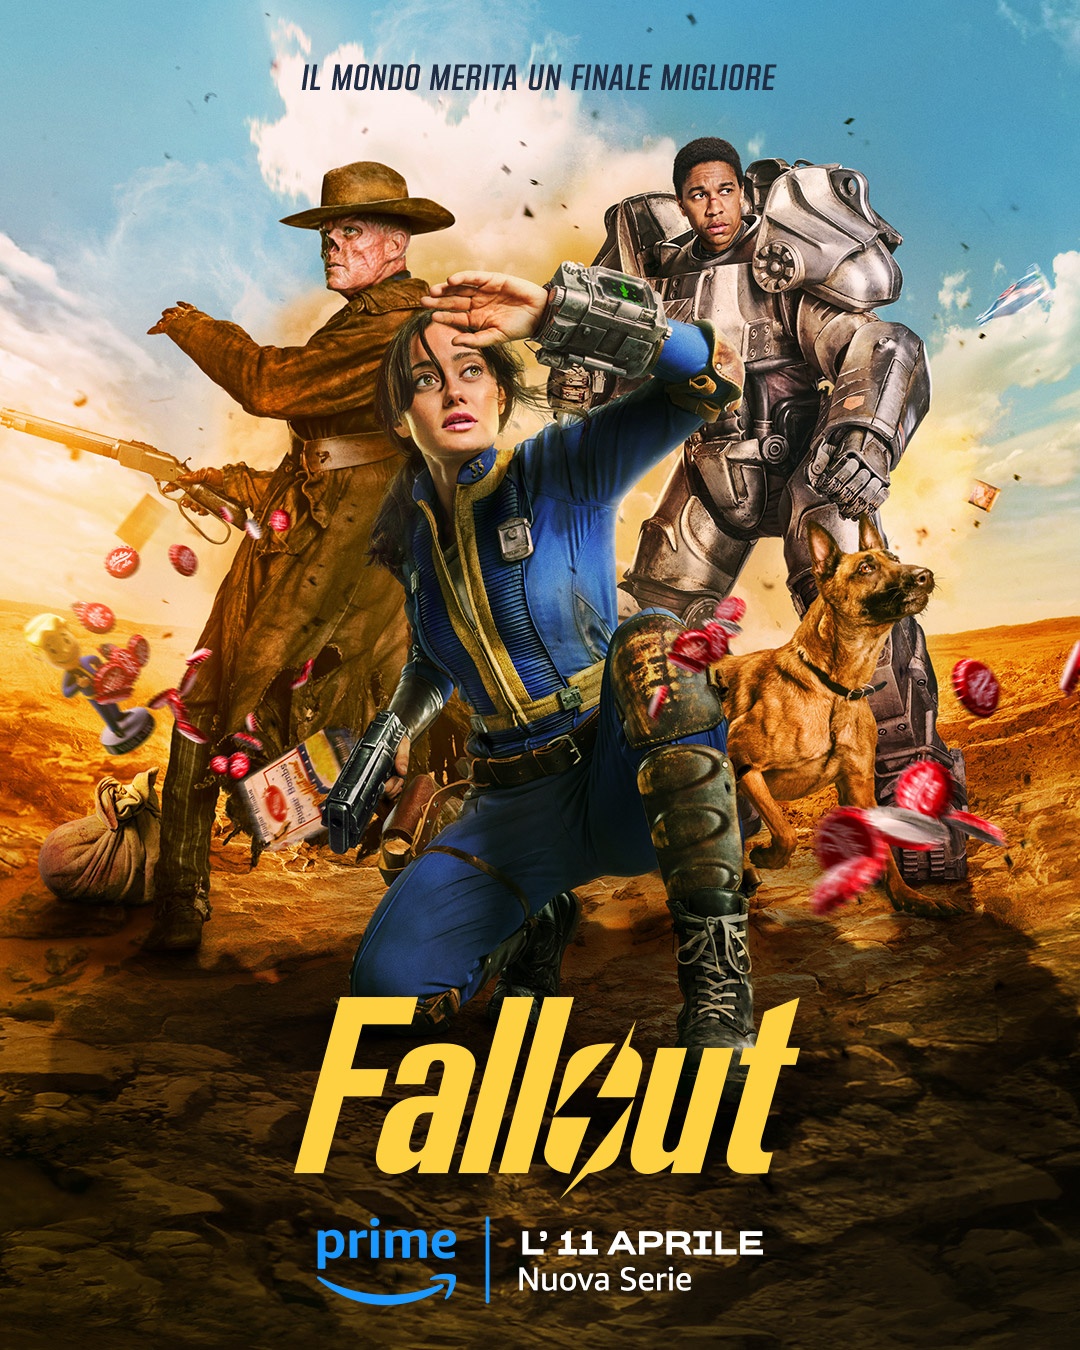 La prima stagione della serie Fallout di Amazon Prime